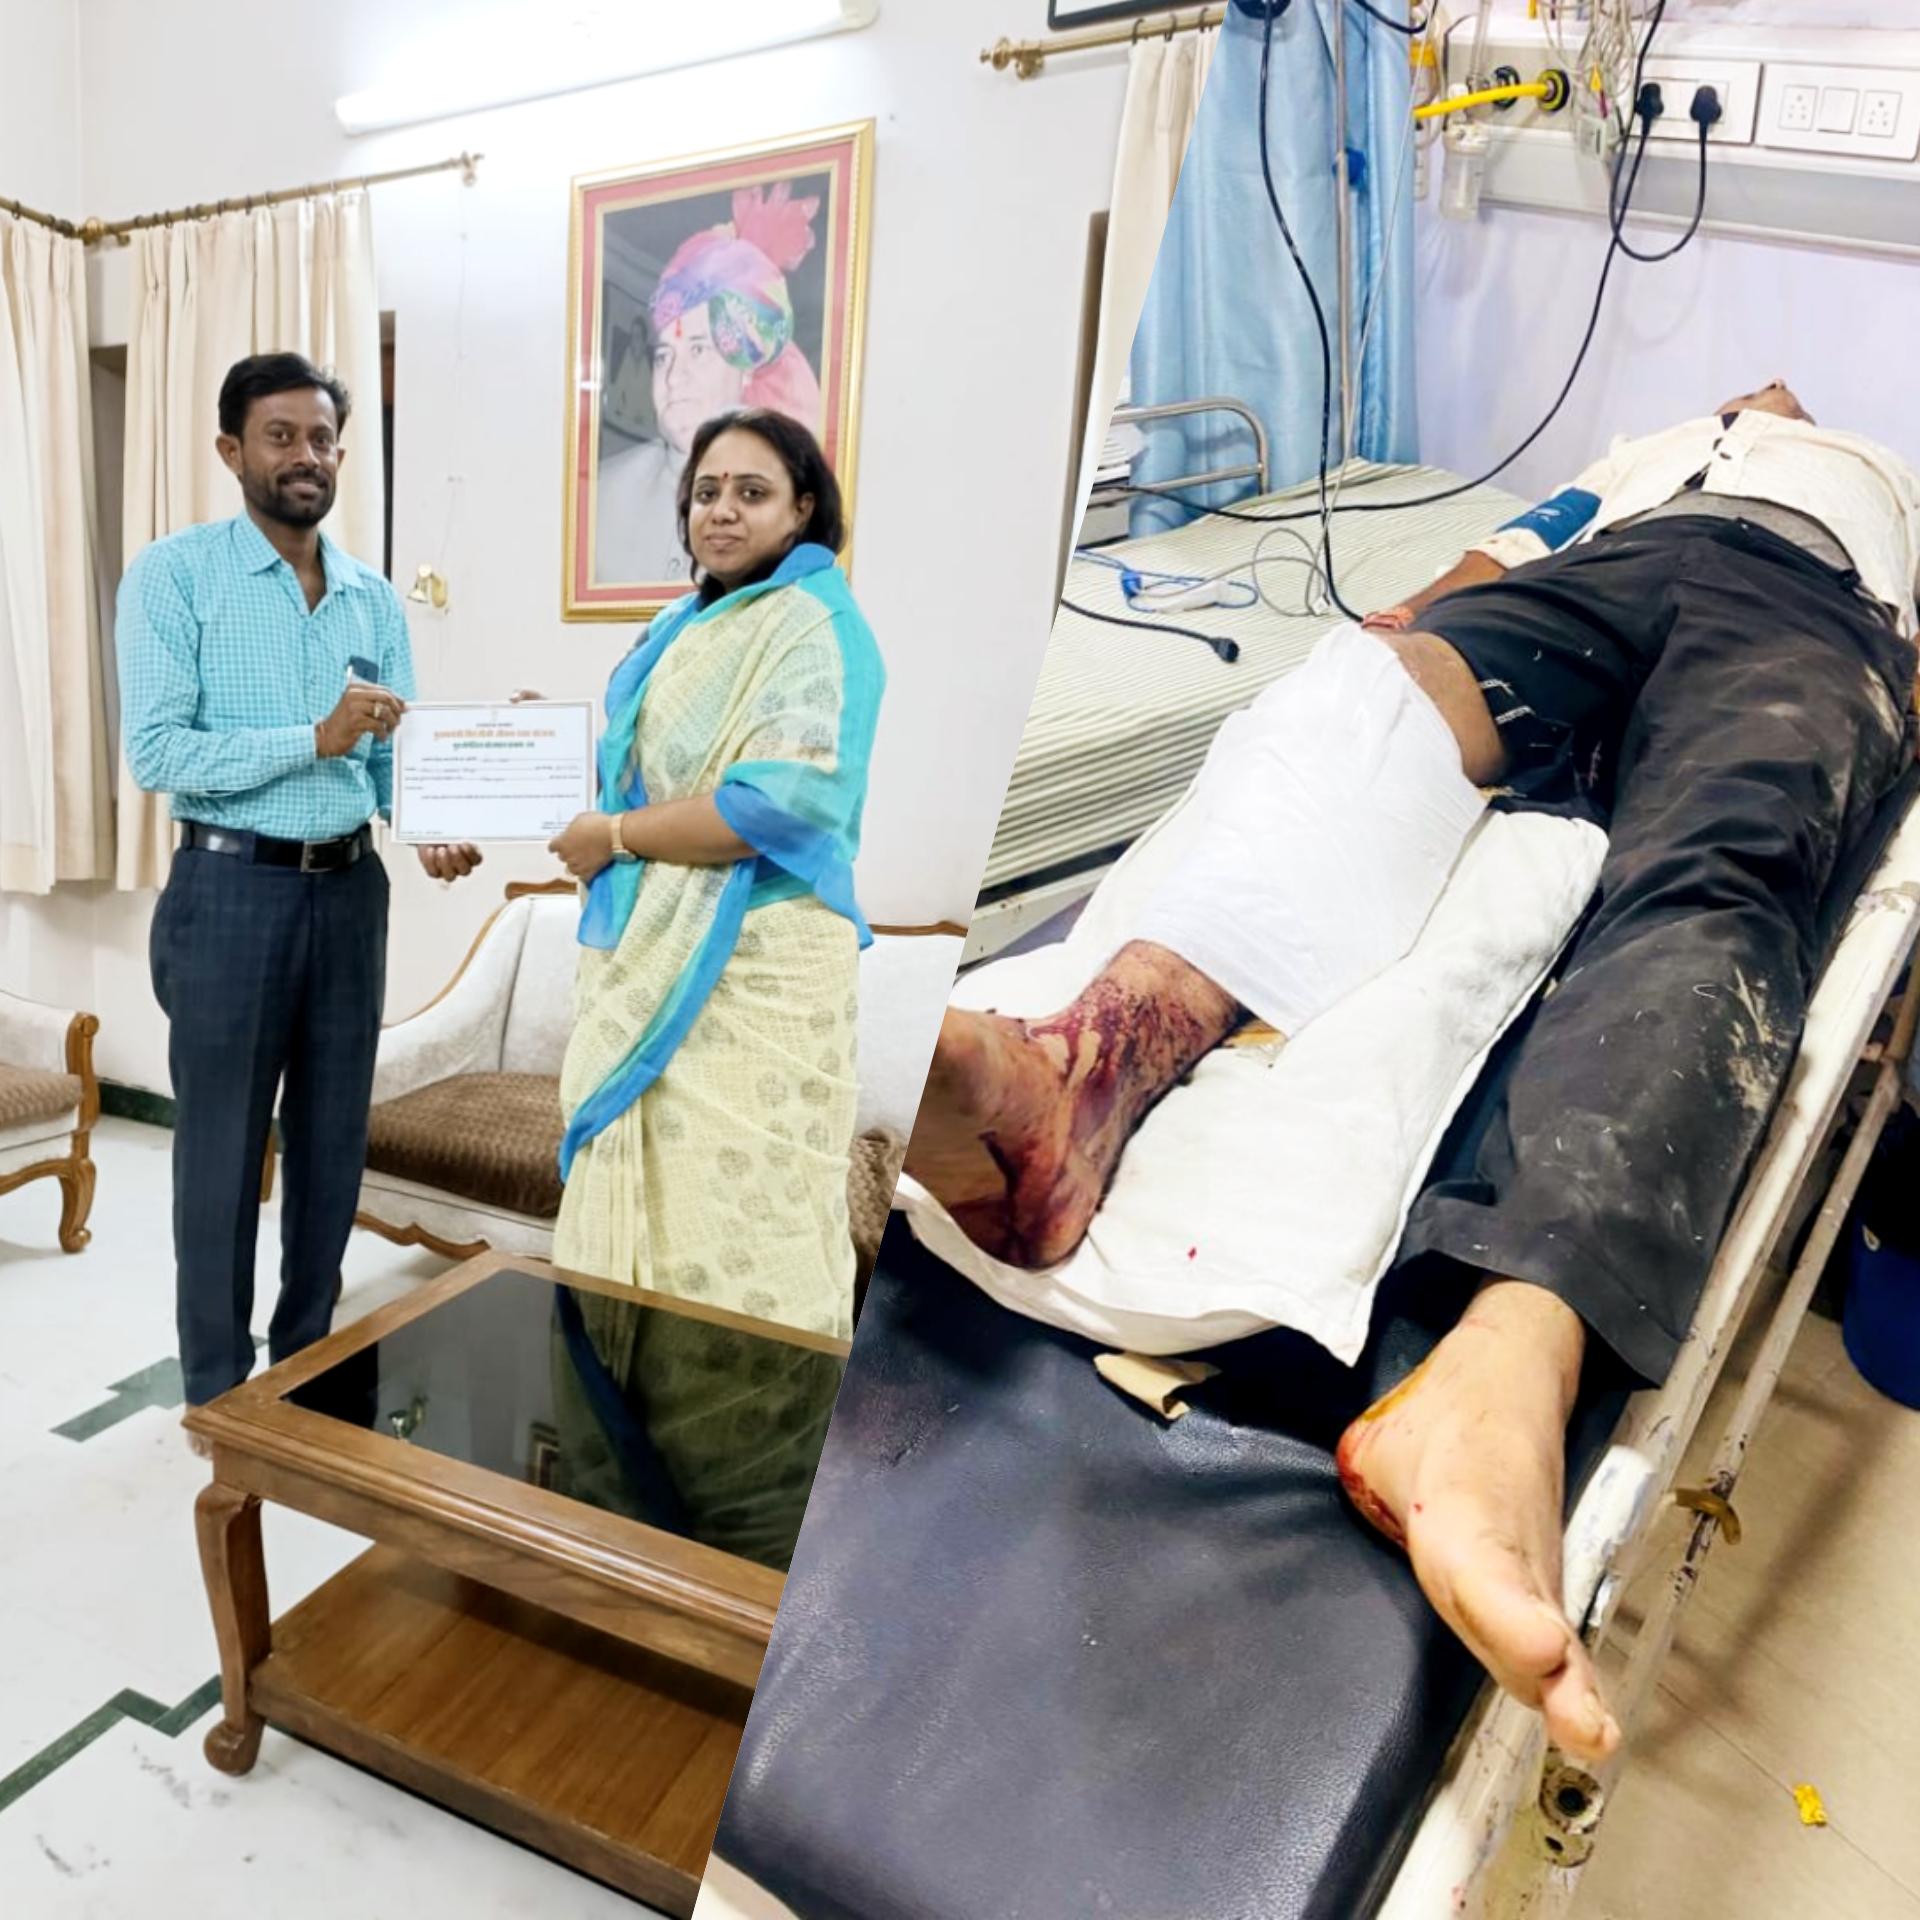 दुर्घटना में घायल व्यक्ति को अस्पताल पहुंचाने पर राजस्थान सरकार से सम्मानित हुए :- अशोक गहलोत।